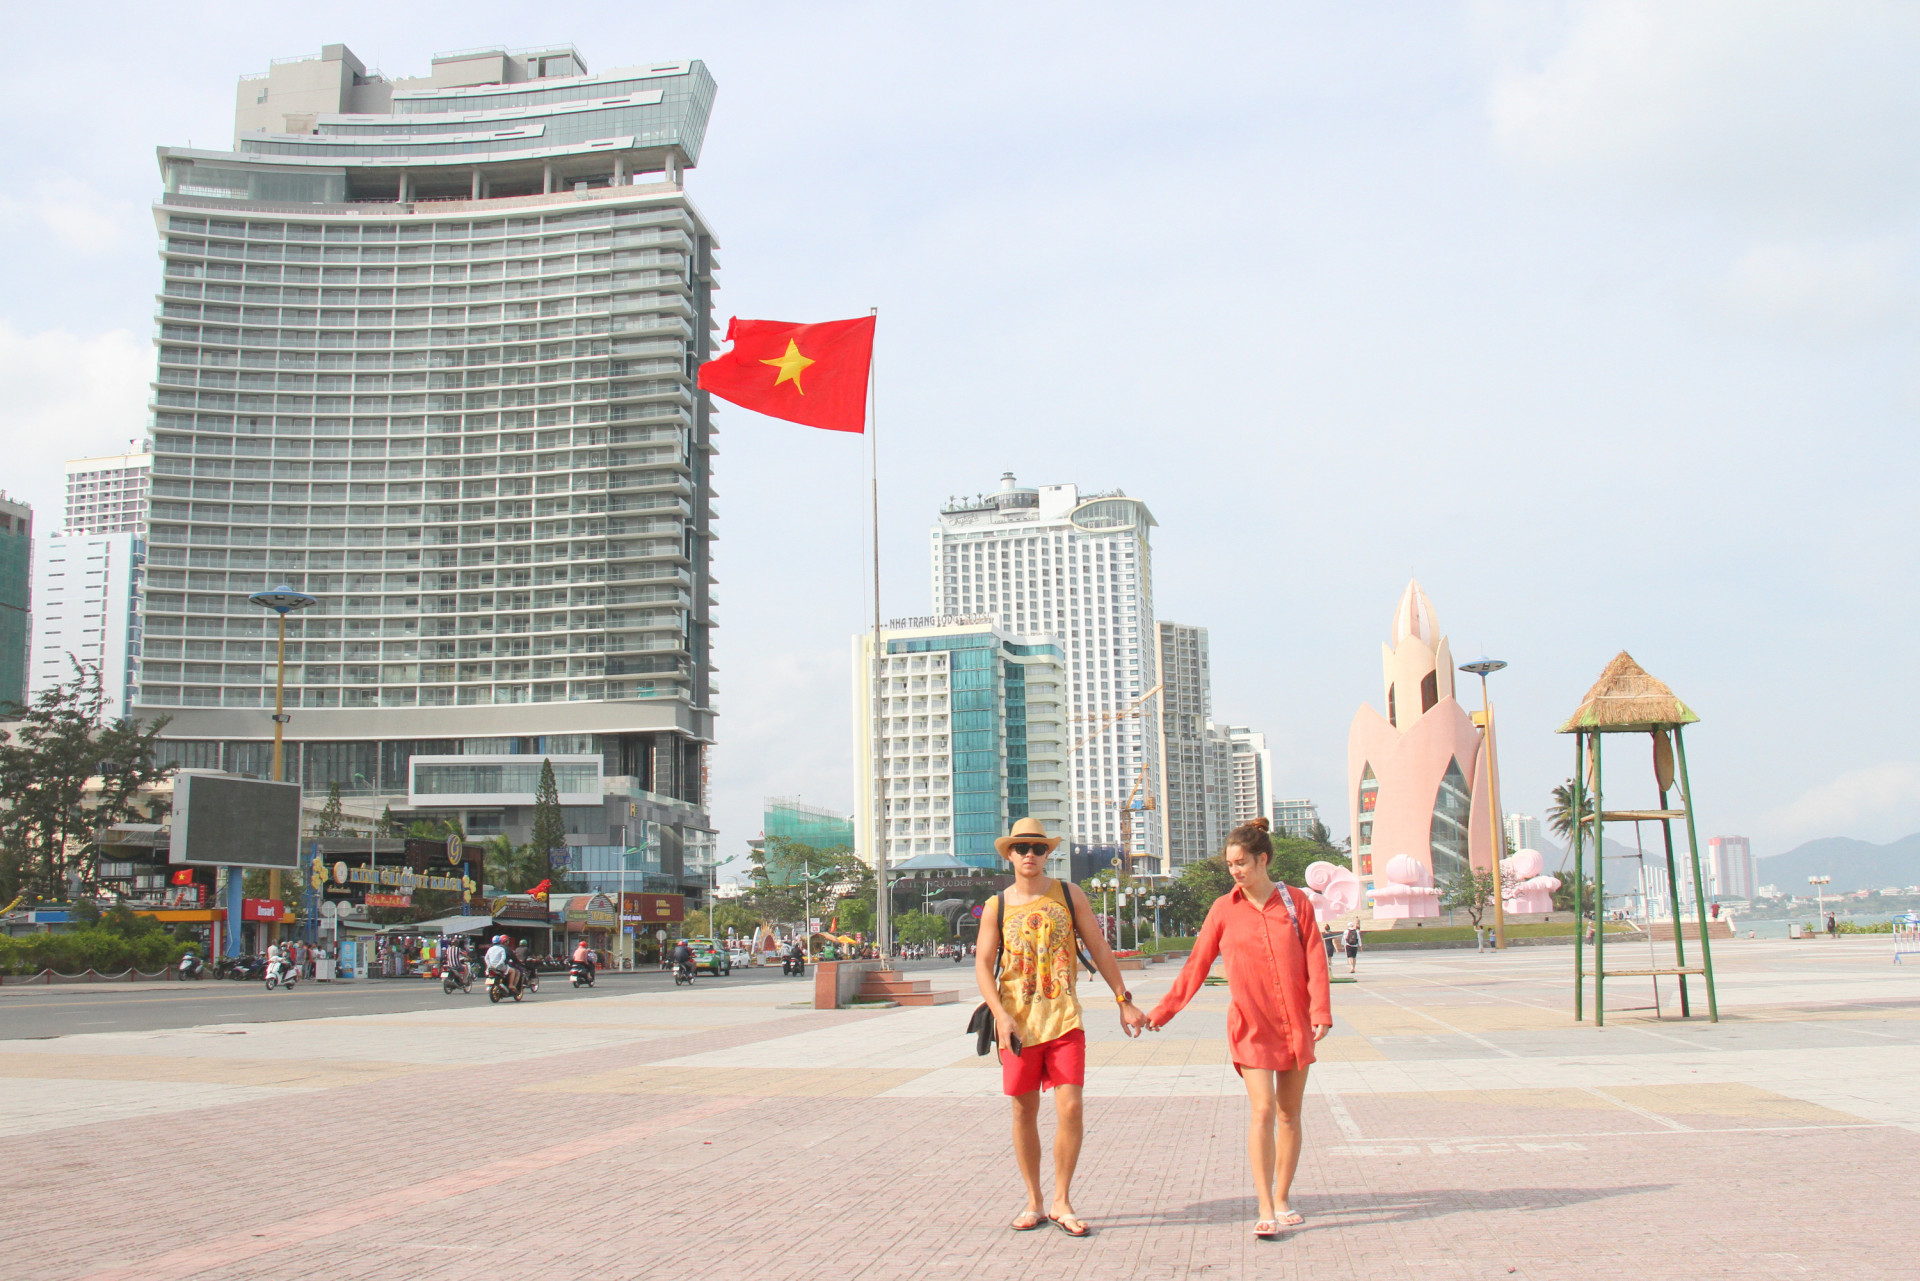  Hoạt động kinh doanh du lịch ở Khánh Hòa gặp khó vì lượng khách sút giảm